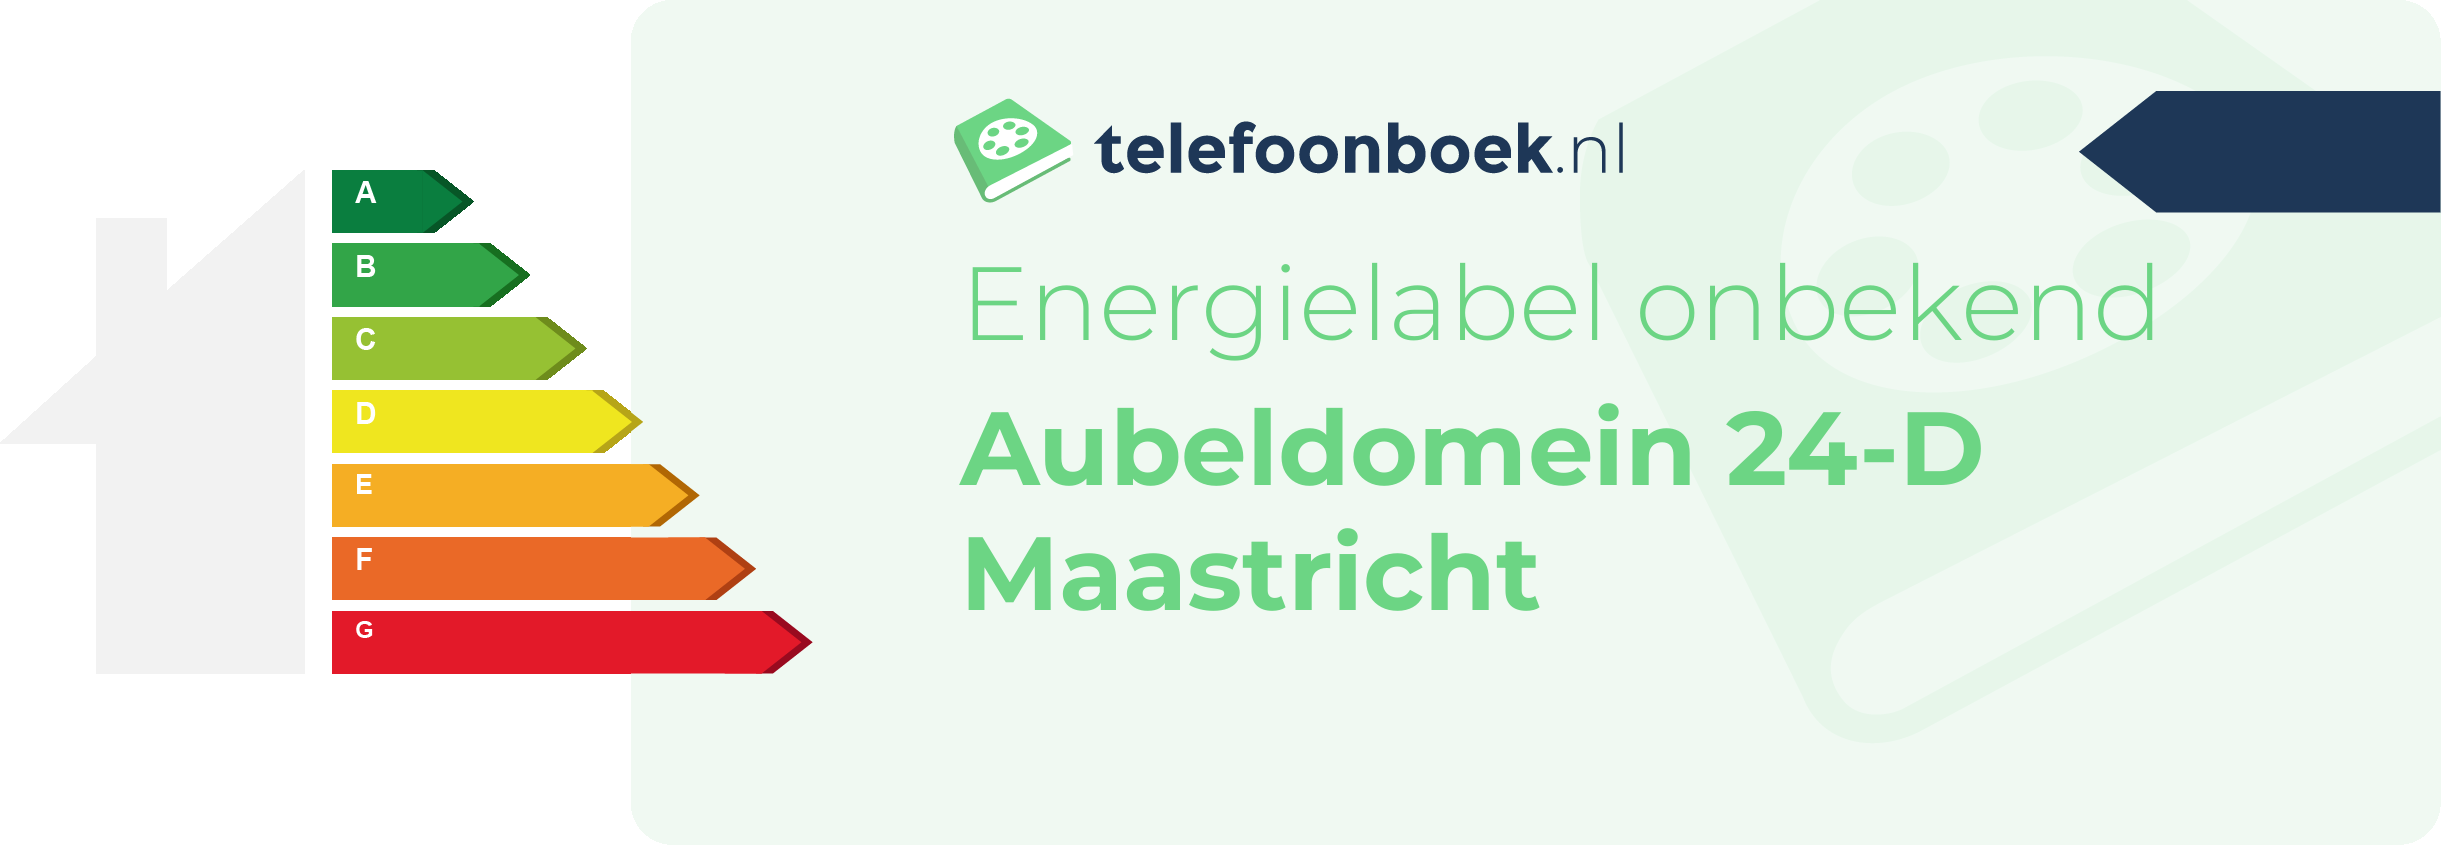 Energielabel Aubeldomein 24-D Maastricht